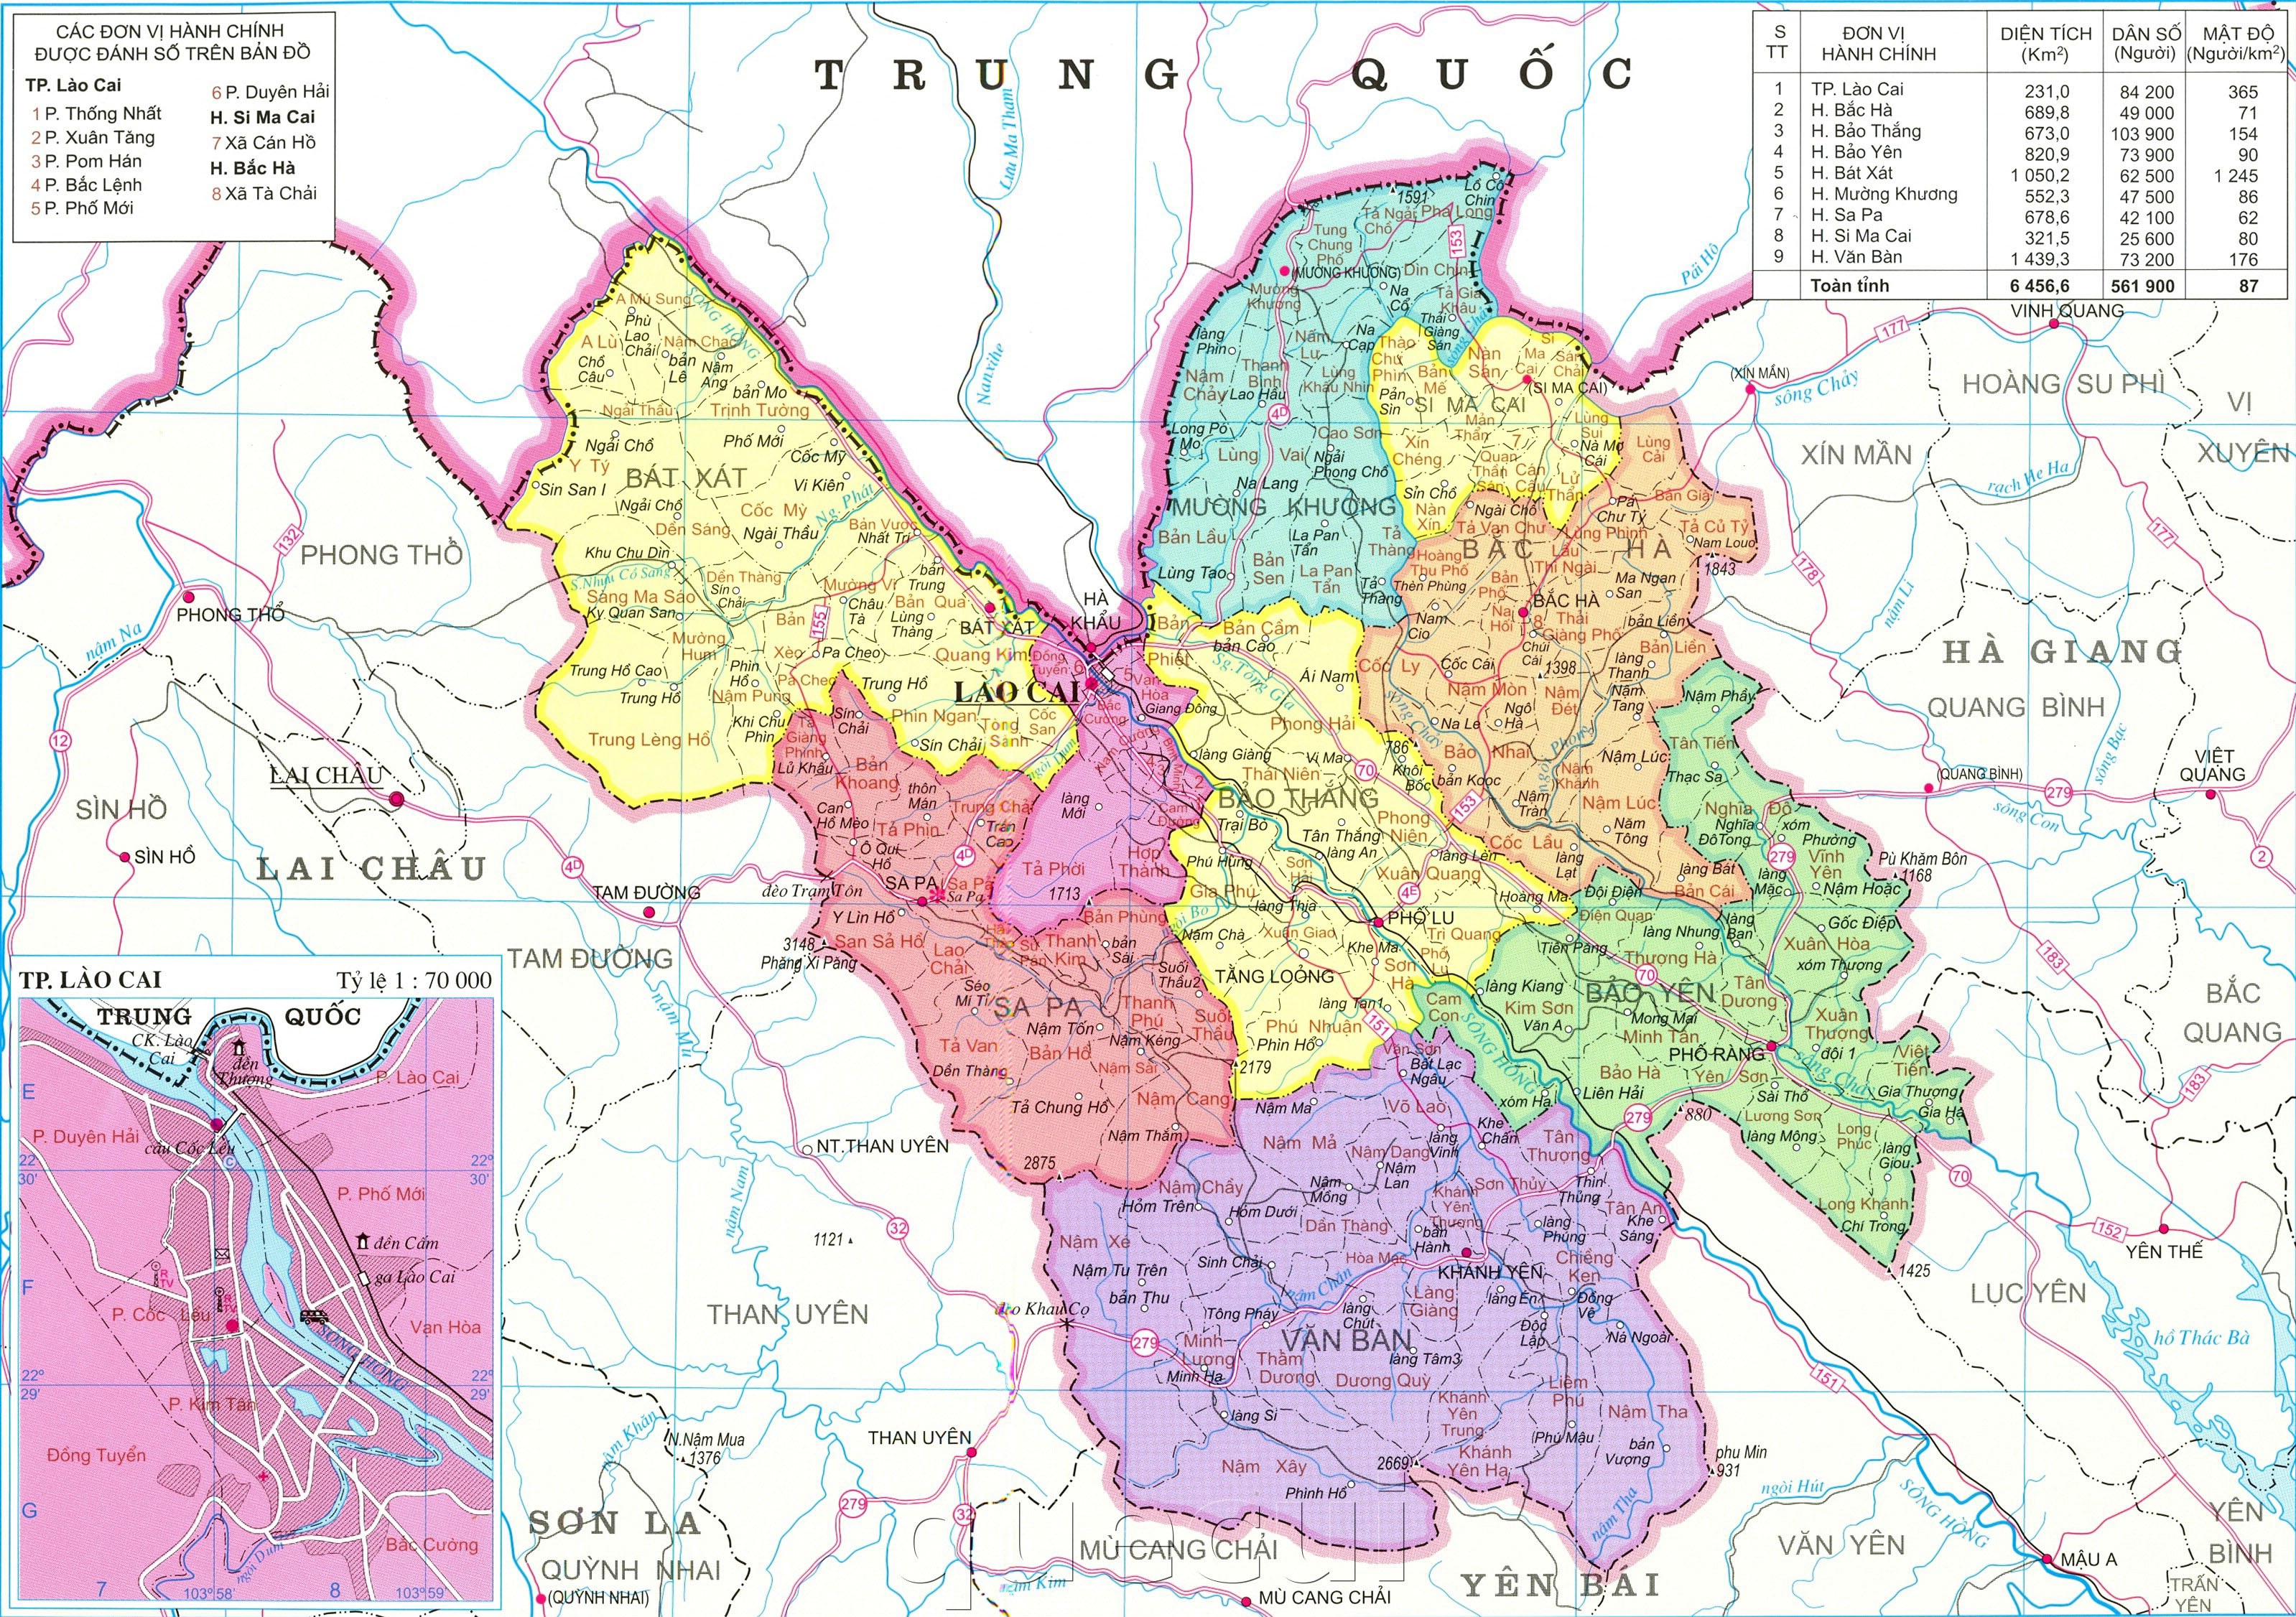 Bản đồ hành chính tỉnh Lào Cai cập nhật đầy đủ với thông tin về địa điểm, đại diện chính quyền địa phương và các dịch vụ công cộng. Điều này giúp người dân và du khách có thể dễ dàng tìm kiếm và liên lạc với các cơ quan chức năng để giải quyết các vấn đề phát sinh.